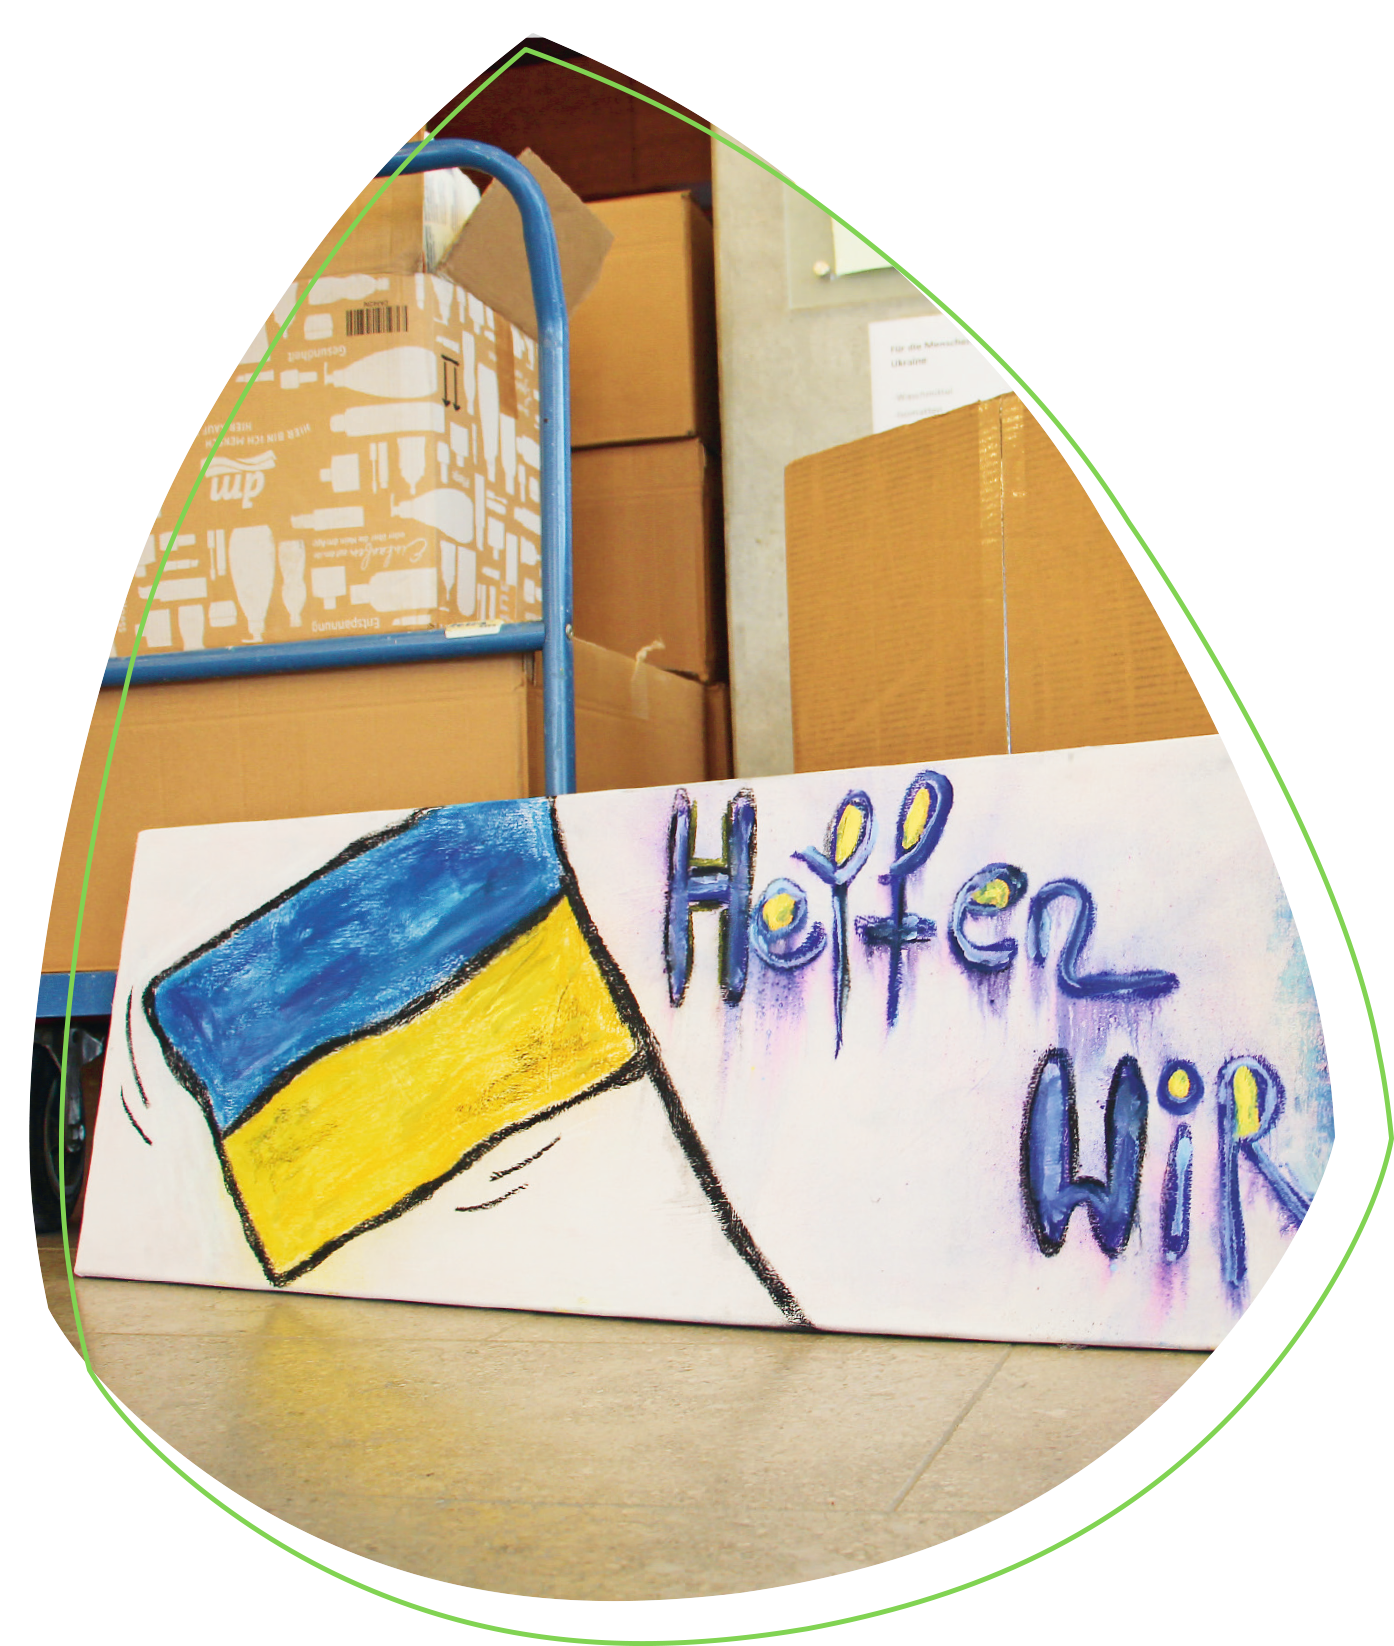 Ein bemaltes Banner, auf dem die ukrainische Flagge abgebildet ist und der Schriftzug „Helfen wir“ geschrieben ist. Dies symbolisiert die Solidarität und Unterstützung der Mitarbeiterinnen und Mitarbeiter des Blindeninstituts Regensburg.